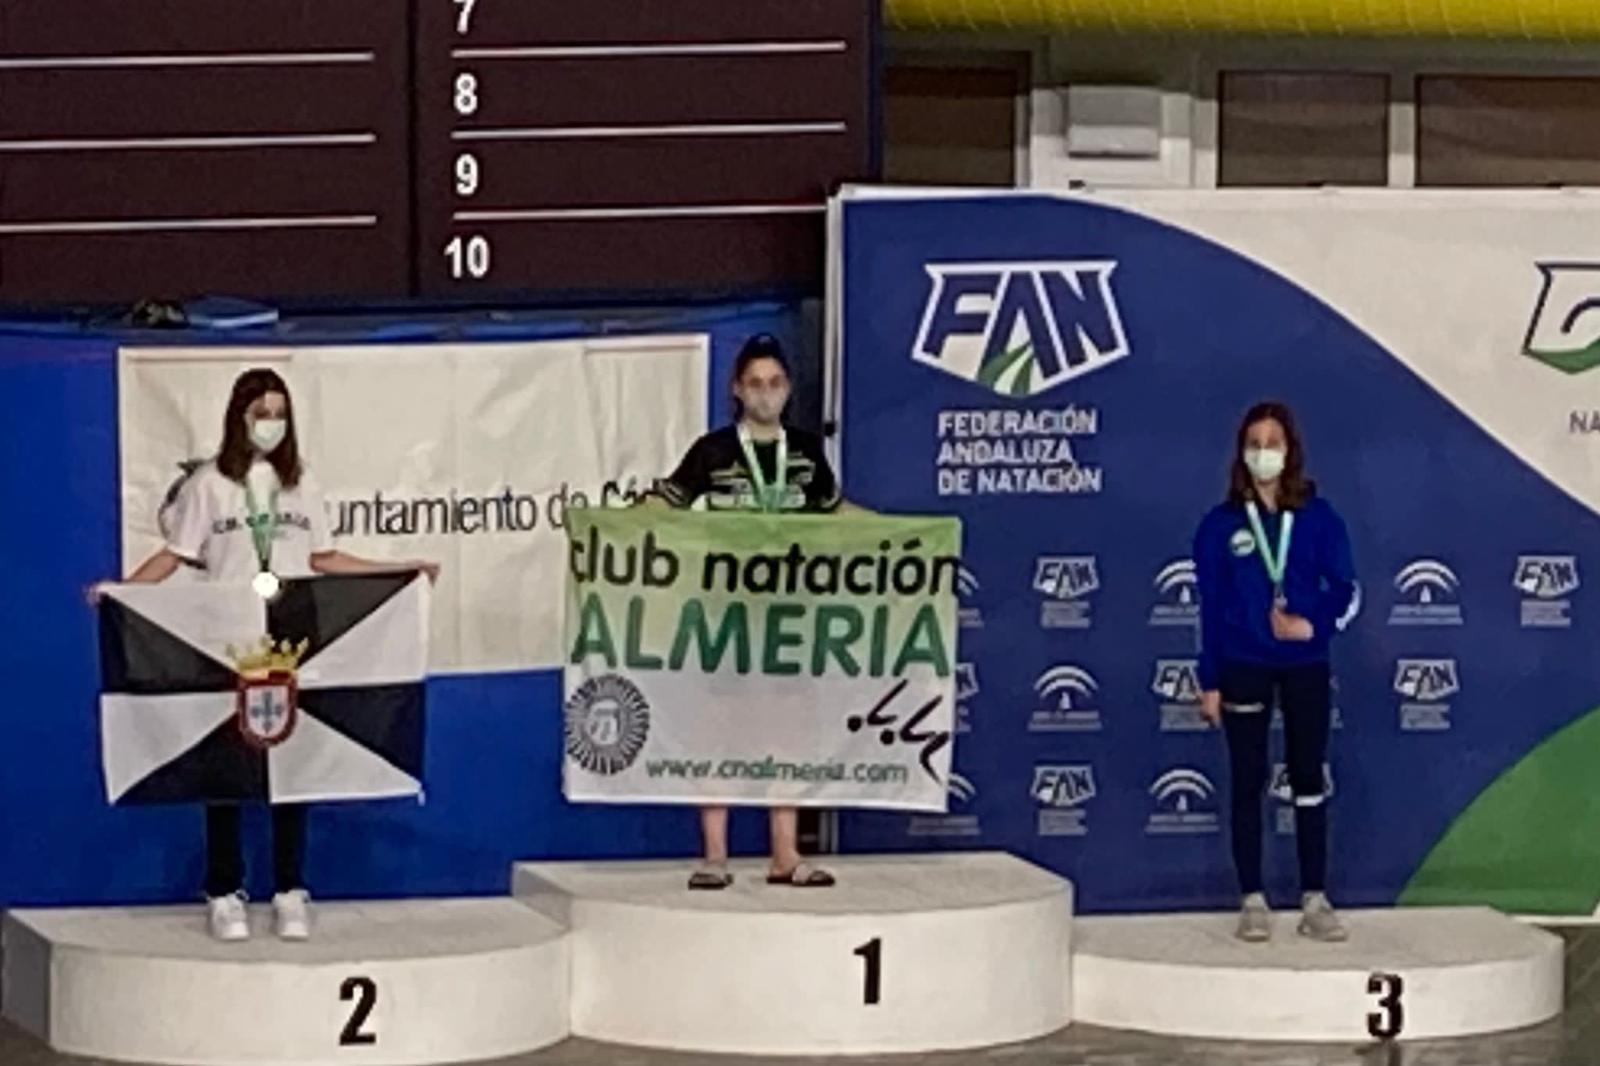 La nadadora ceutí Lara Gallardo, plata en el Campeonato de Andalucía Alevín de Natación